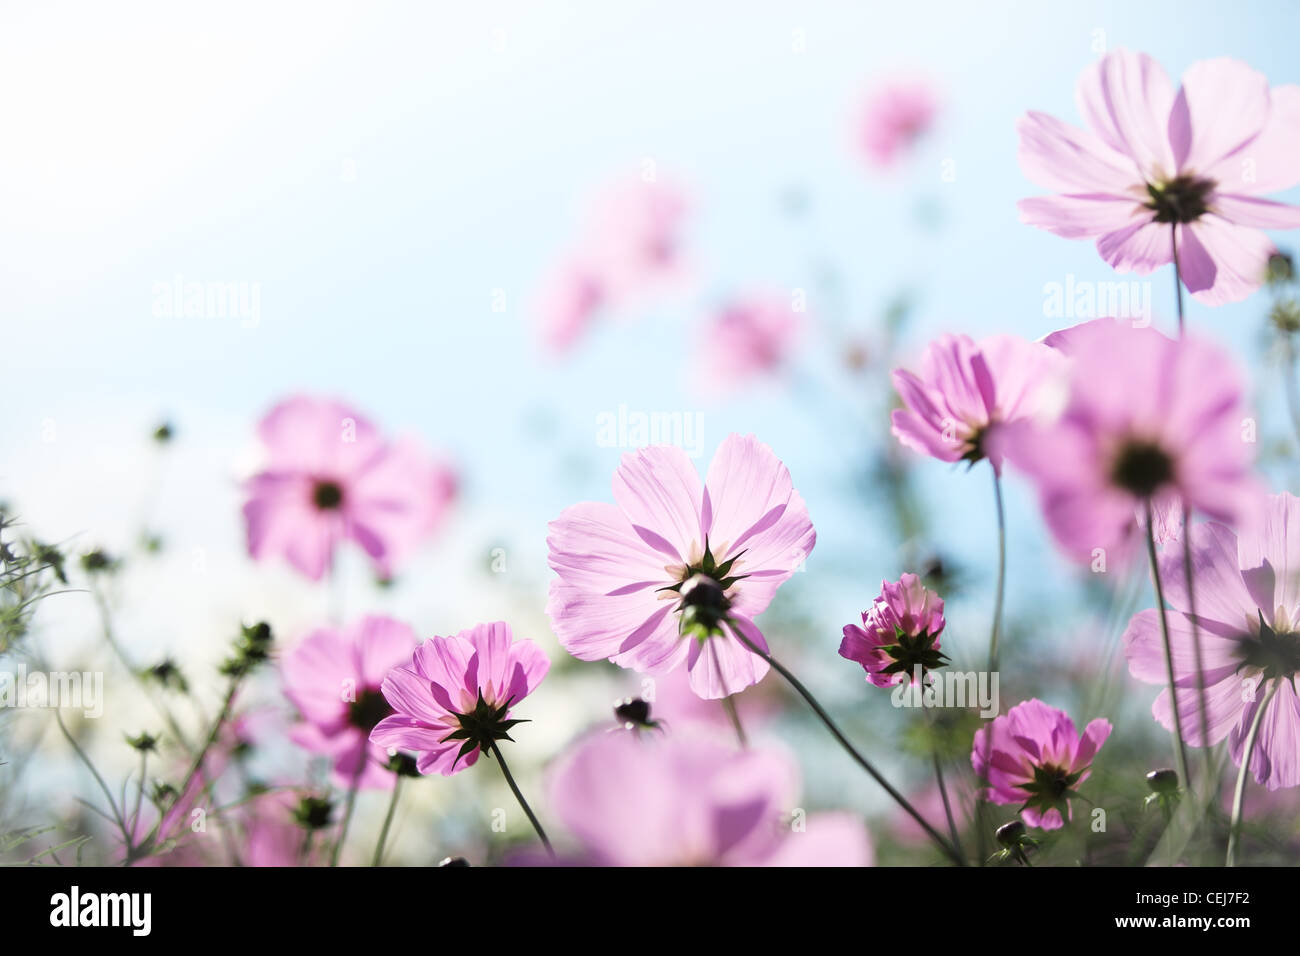 Daisy flower against blue sky,Shallow Dof. Stock Photo